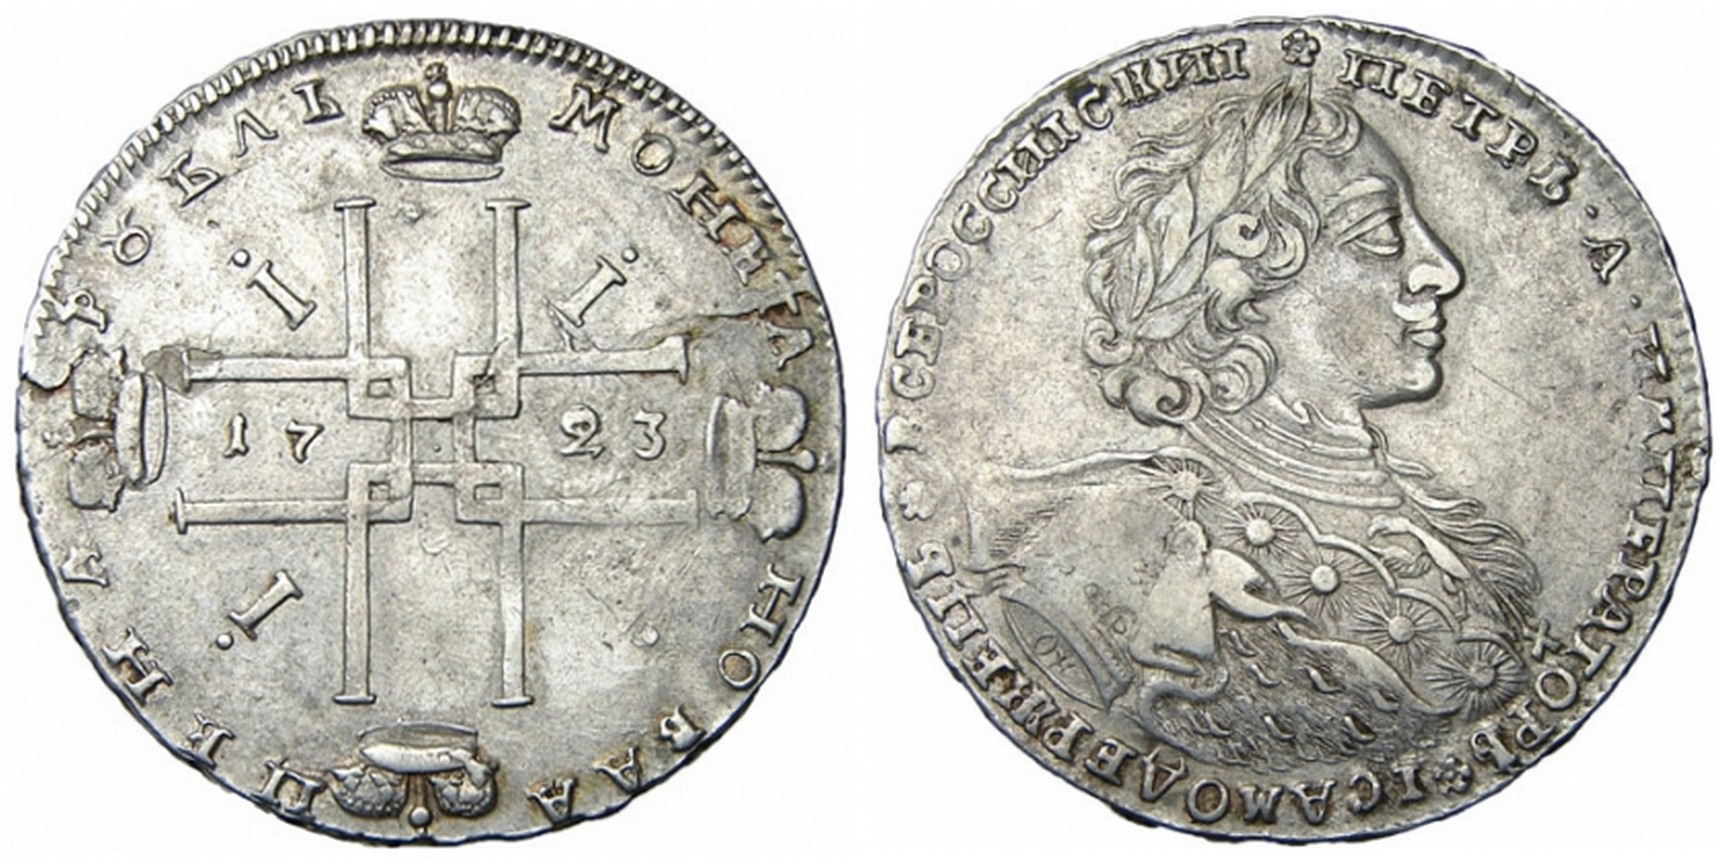 1700 1725. Монета Петра 1 1723г. Монета рубль Петра 1 1723. Монеты Российской империи Петра 1.